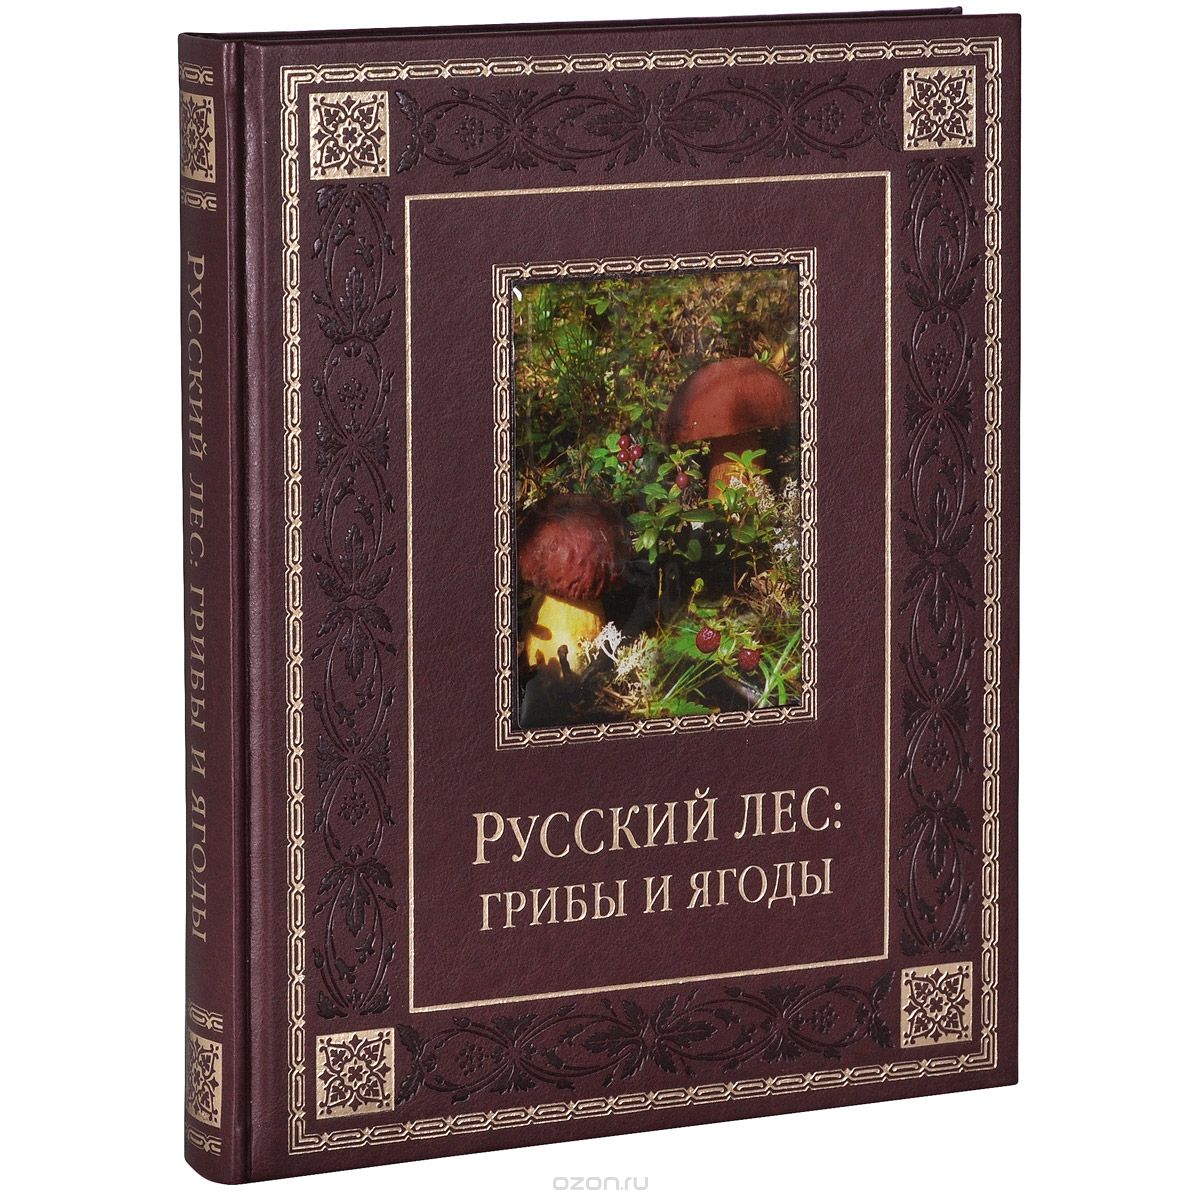 Скачать книгу "Русский лес. Грибы и ягоды (подарочное издание)"